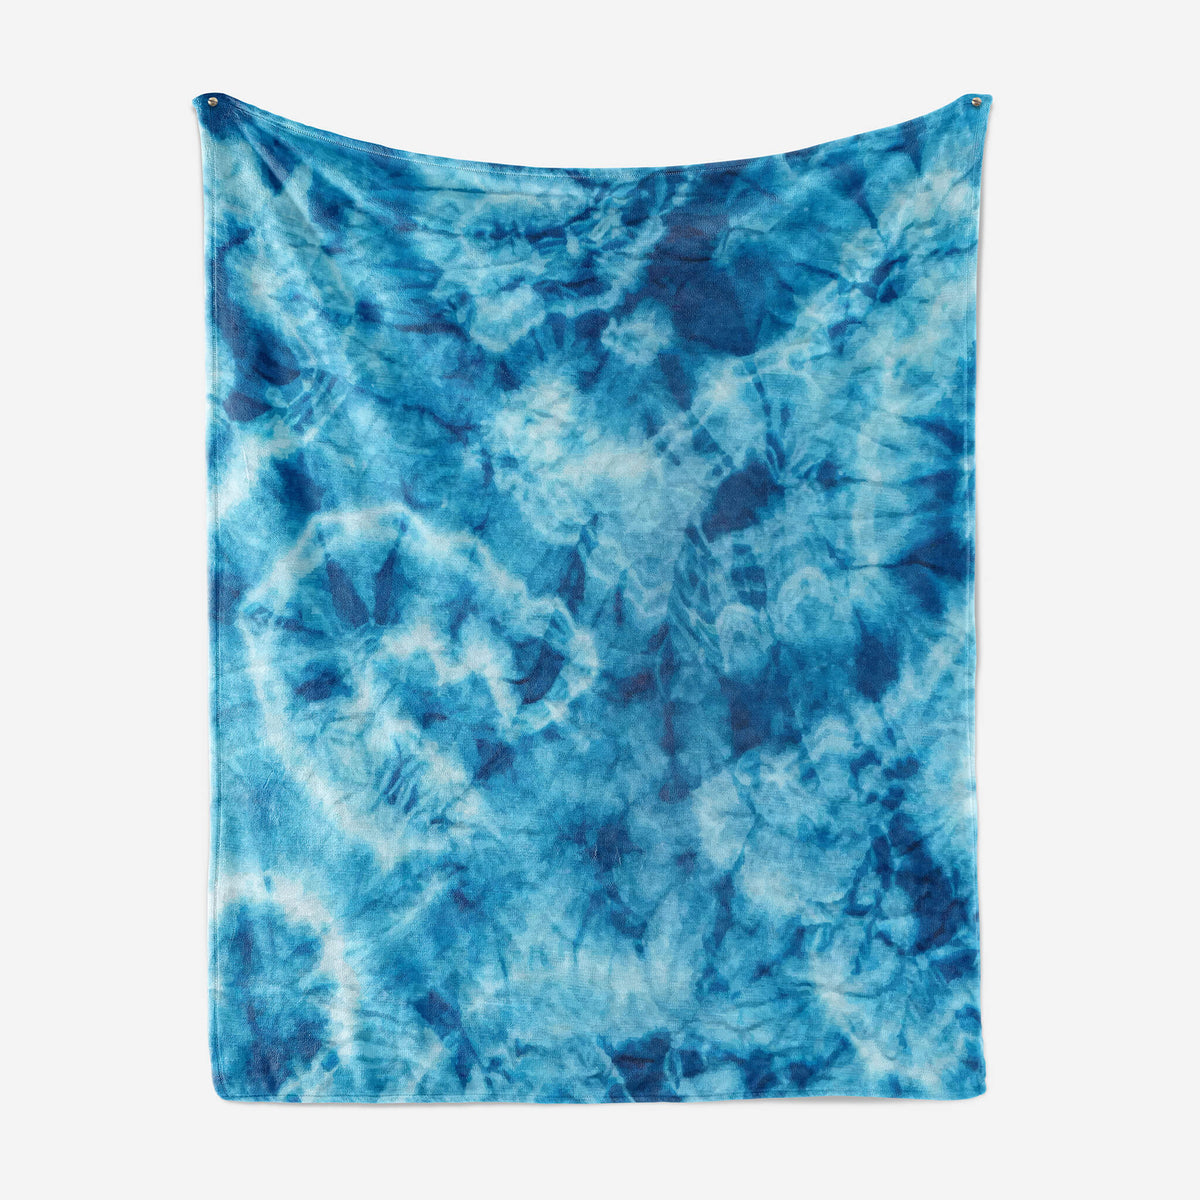 Tie Dye Blues Abstract Art Blanket